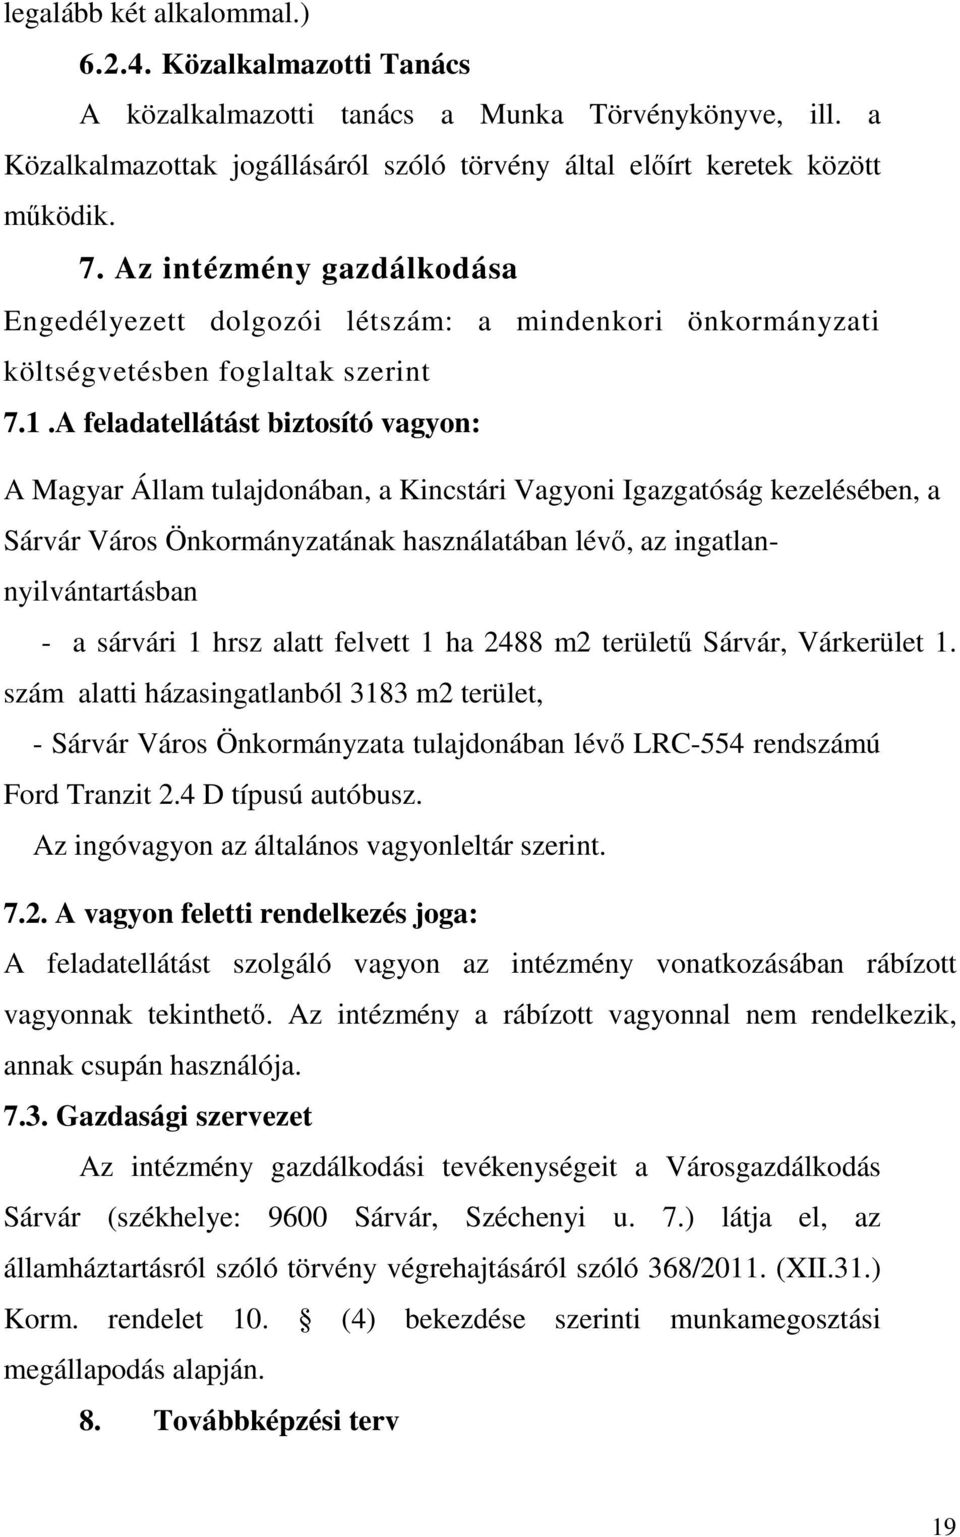 A feladatellátást biztosító vagyon: A Magyar Állam tulajdonában, a Kincstári Vagyoni Igazgatóság kezelésében, a Sárvár Város Önkormányzatának használatában lévő, az ingatlannyilvántartásban - a